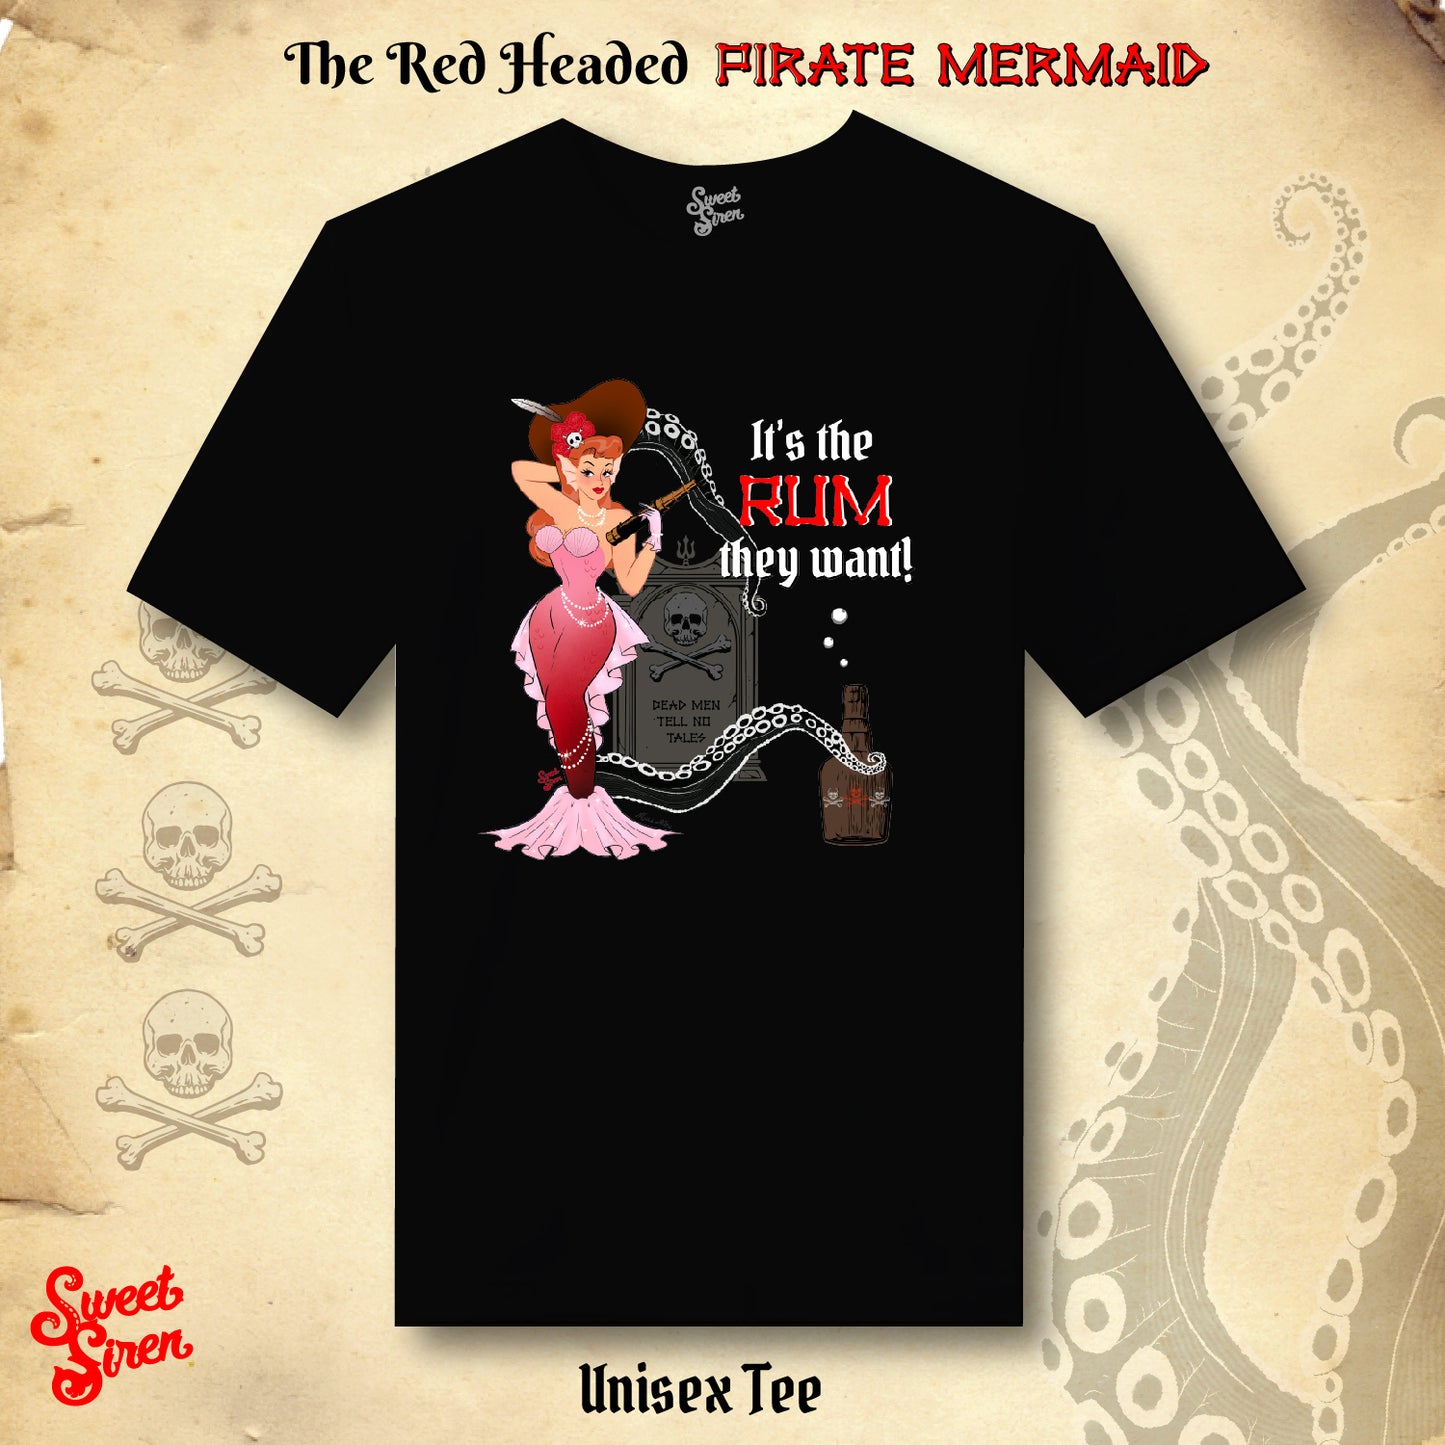 Red Headed Pirate Mermaid - Unisex Tee